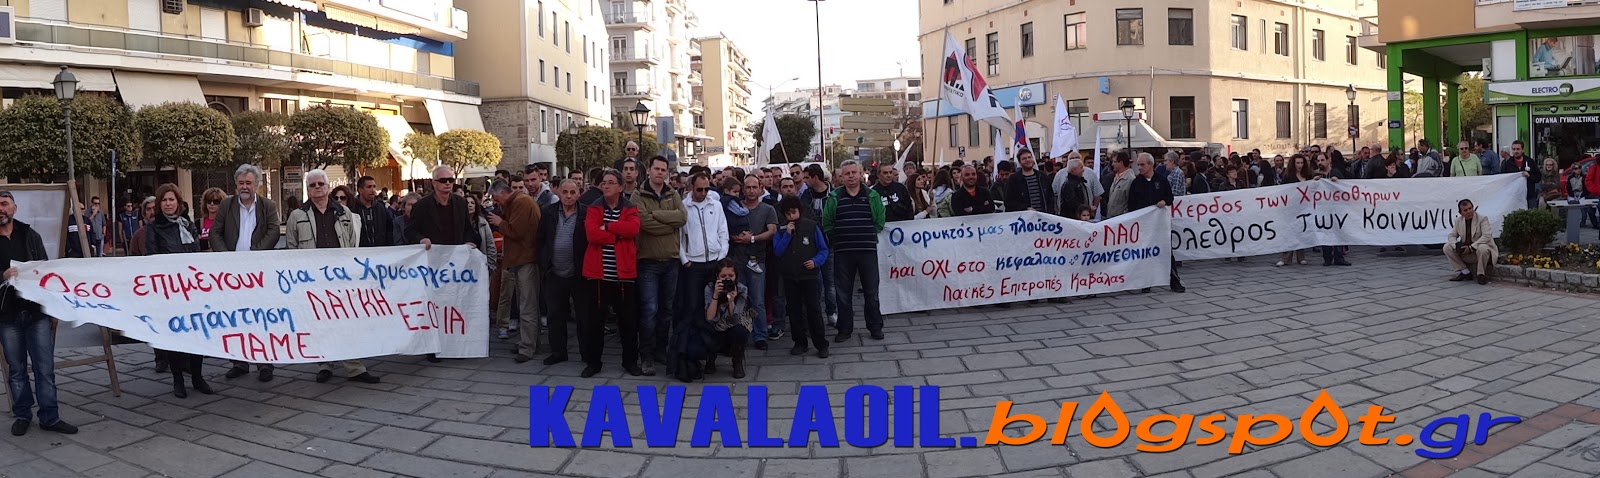 Πορεία αλληλεγγύης στους διωκόμενους αγωνιστές της Χαλκιδικής στην Καβάλα, 13-4-2013